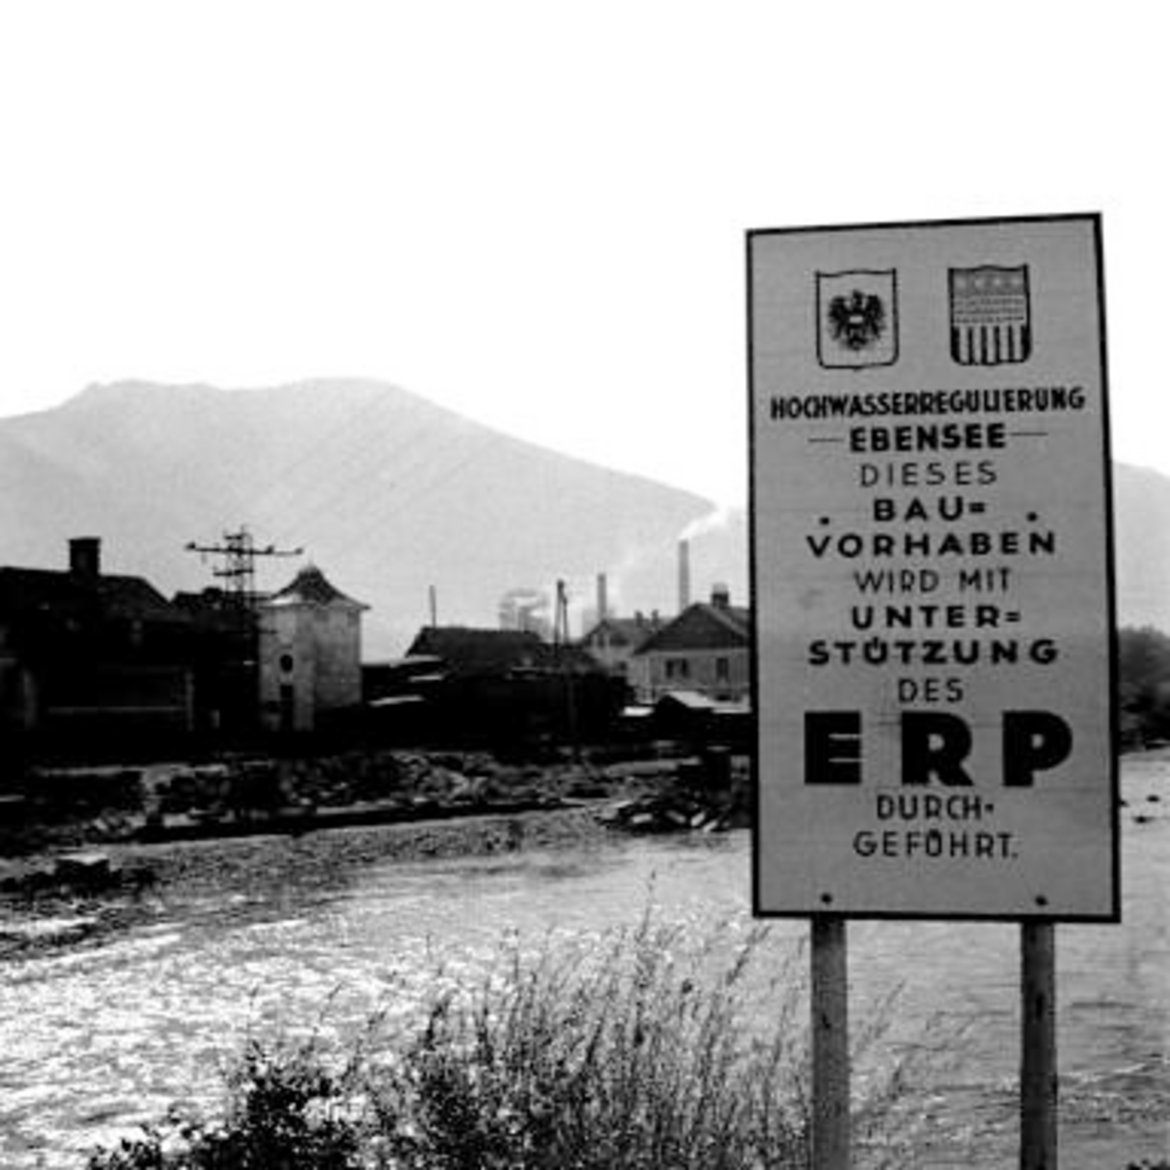 Schild am Flussufer mit US-Wappen und österr. Bundesadler und der Aufschrift: Hochwasserregulierung Ebensee. Dieses Bauvorhaben wird mit Unterstützung des ERP durchgeführt"